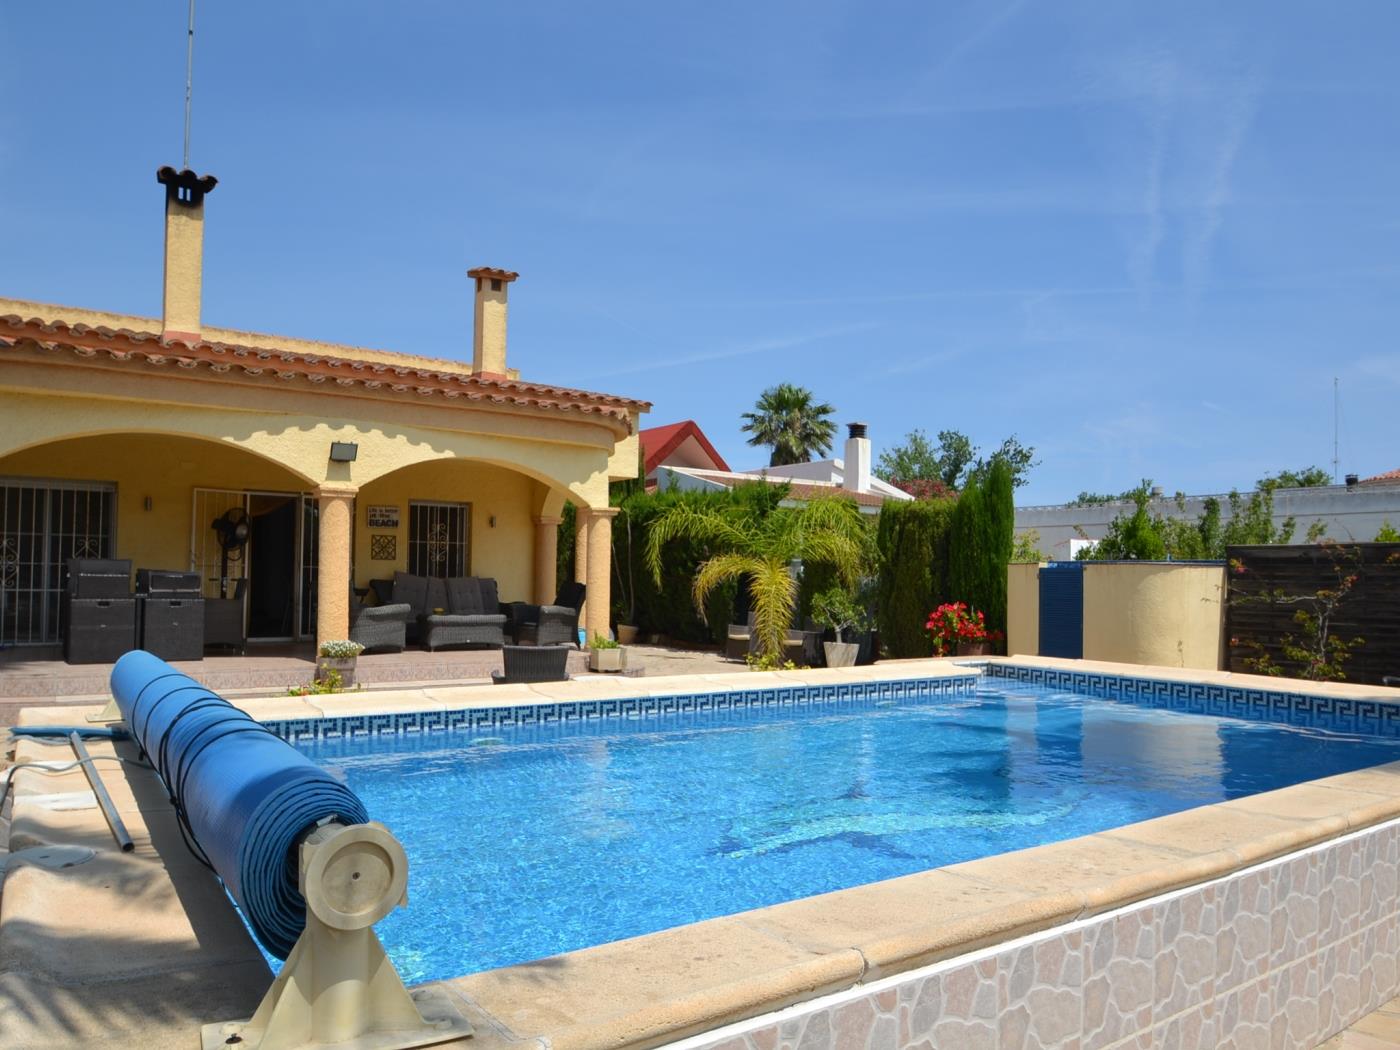 Casa Pirotte amb piscina privada a Riumar - Costa Dorada a Riumar Deltebre